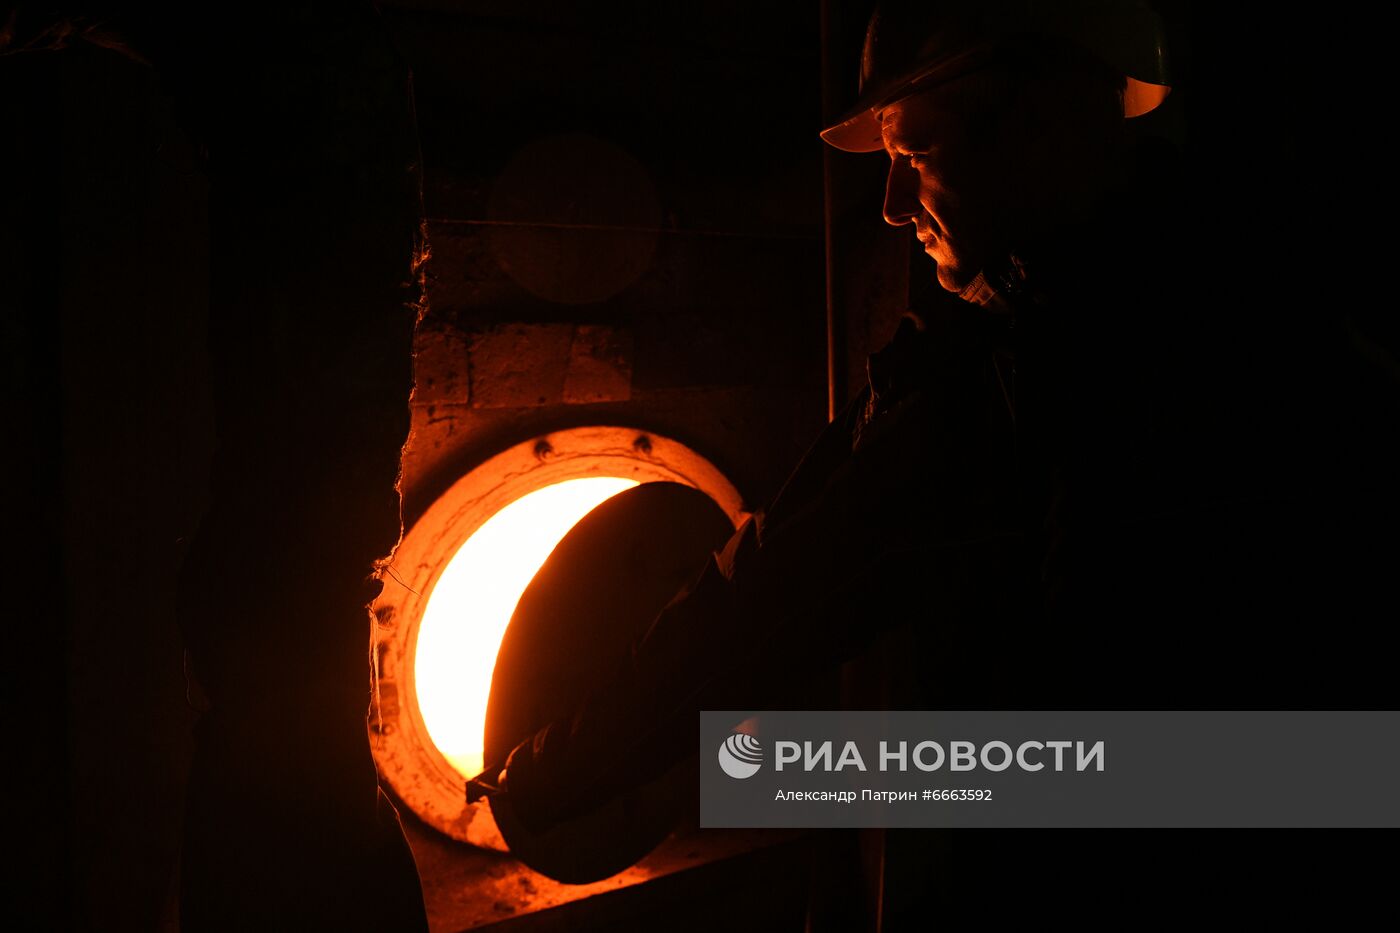 Работа коммунальных служб по подготовке к зимнему сезону в Кемеровской области